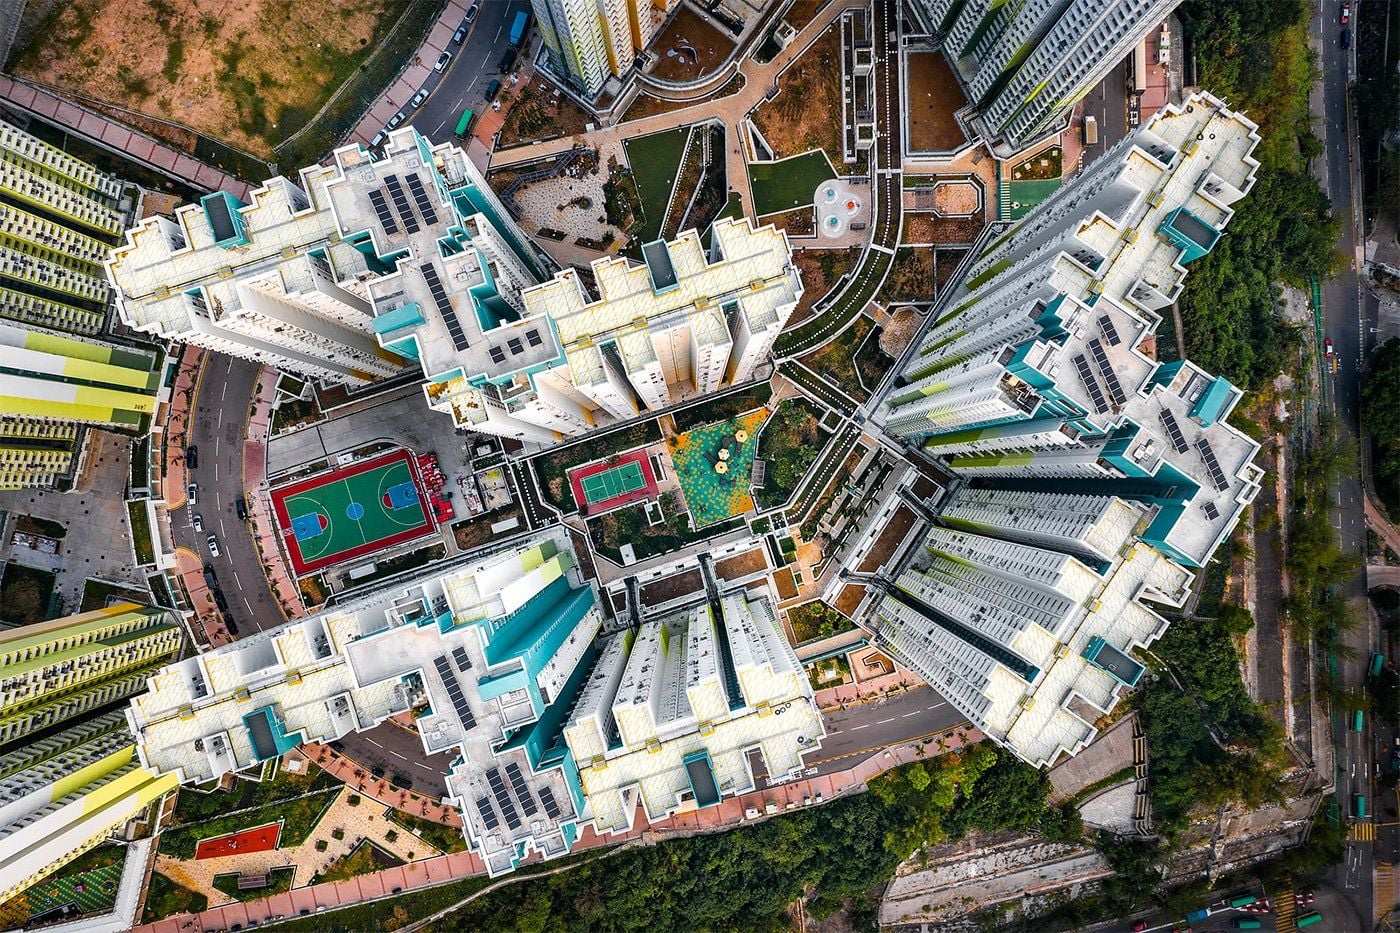 Aerial shot of Hong Kong by Andy Yeung.